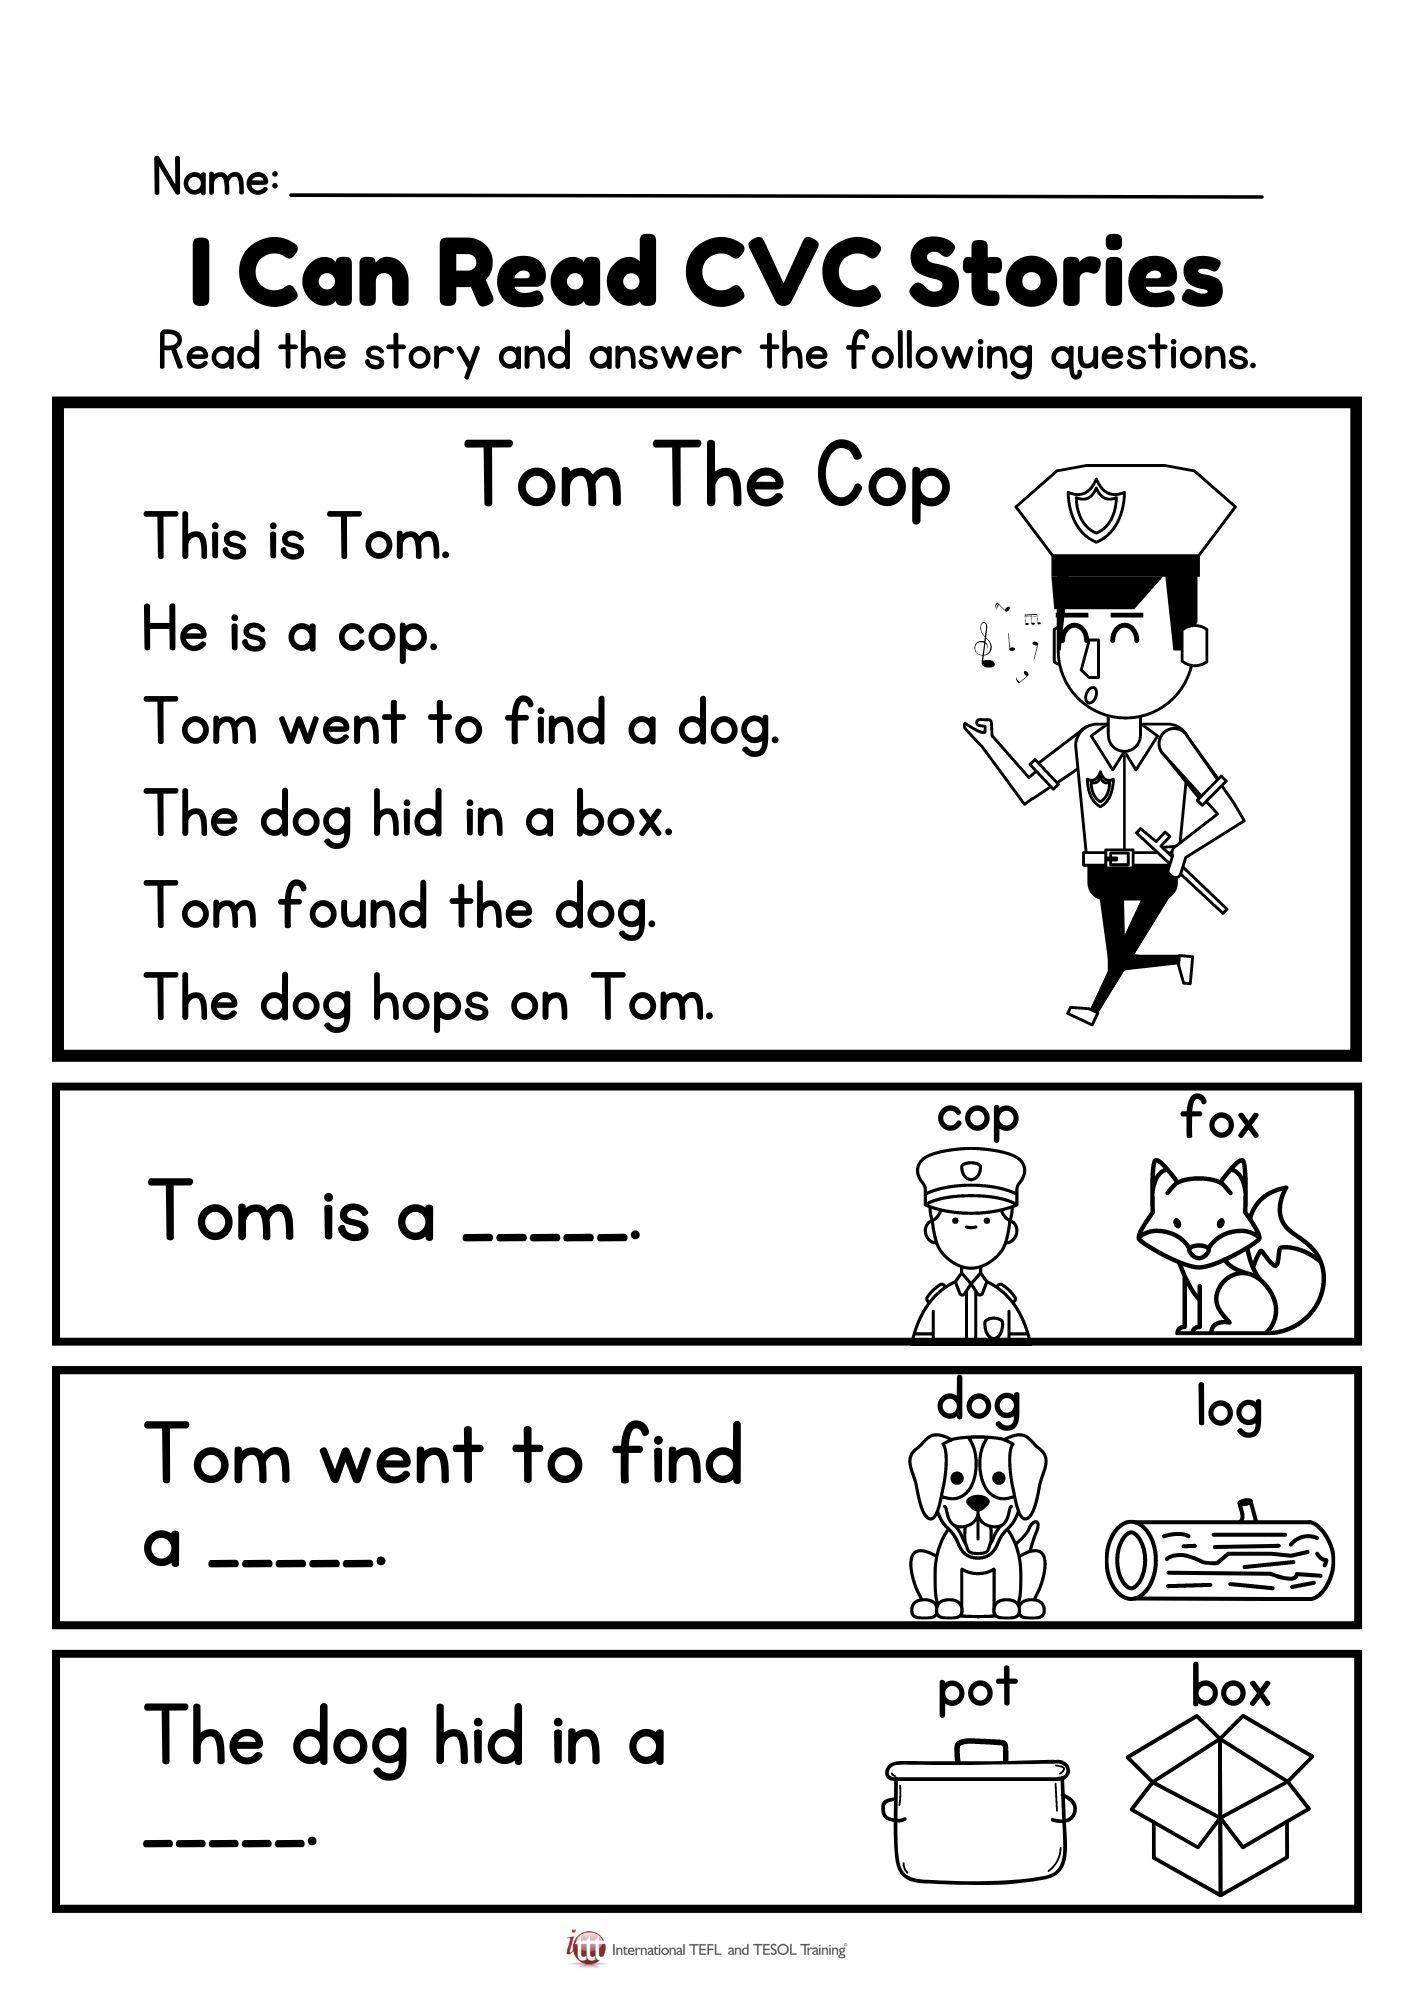 Grammar Corner I Can Read CVC Stories - Tom The Cop